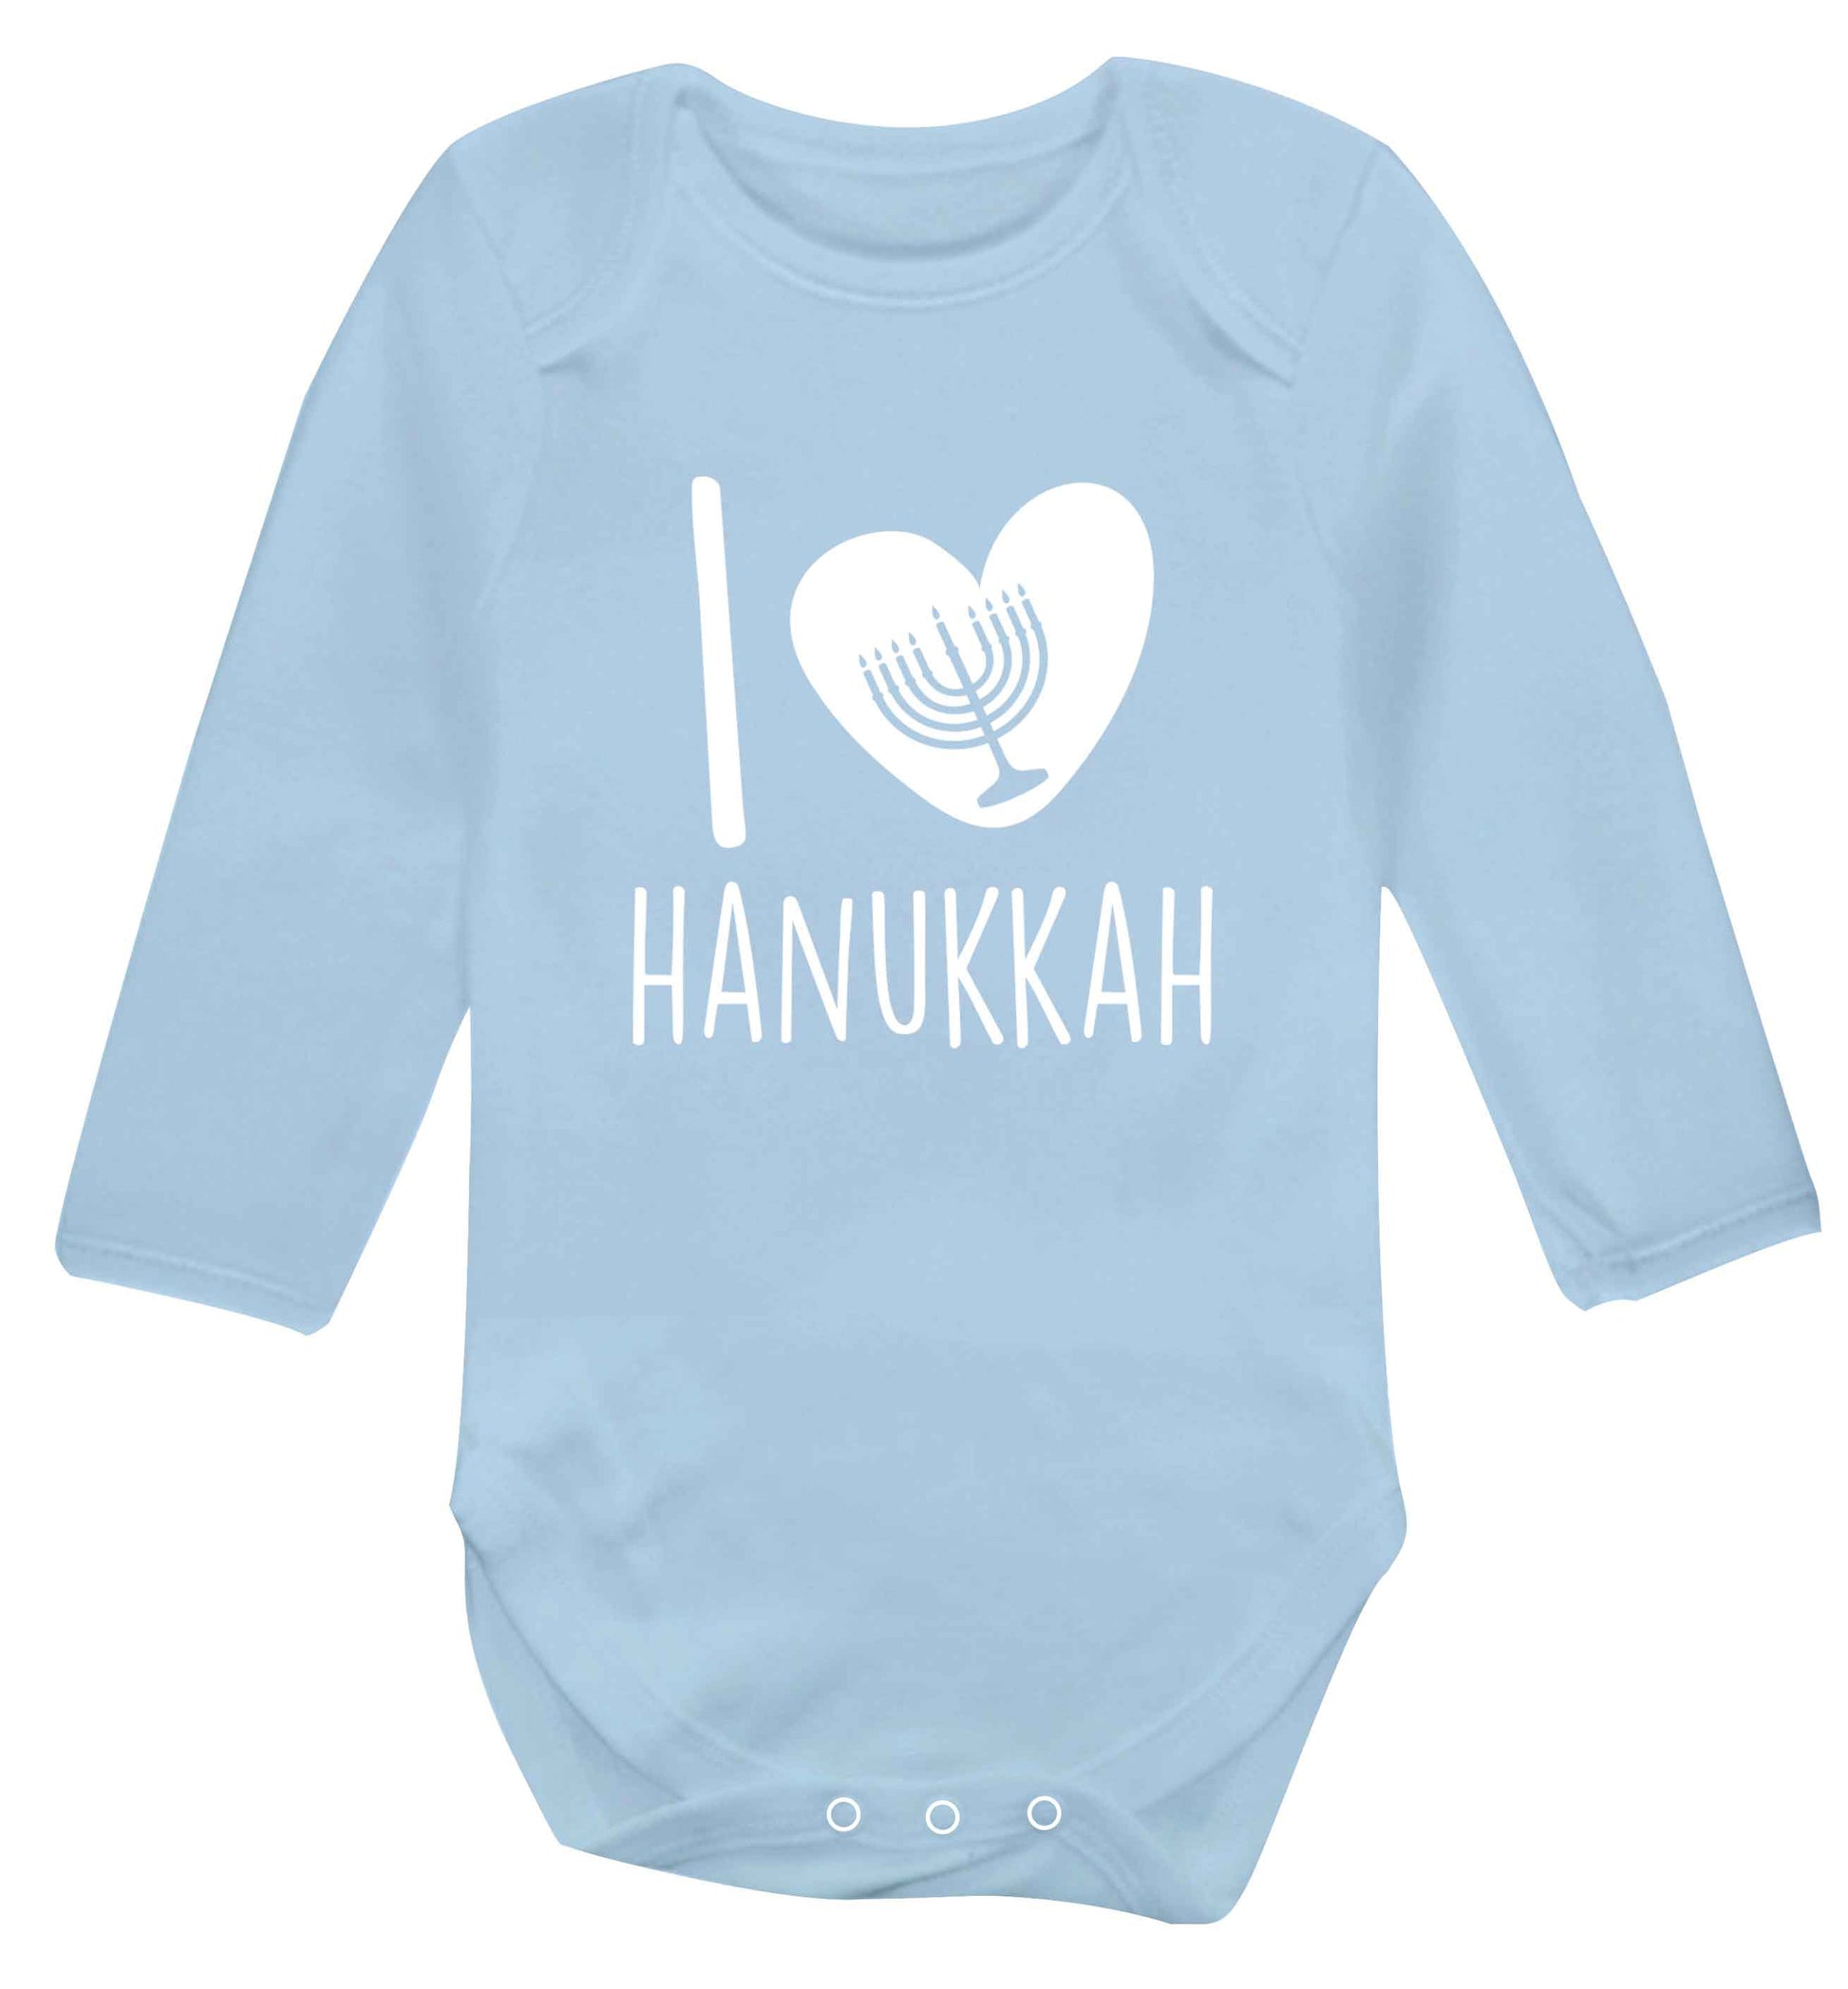 I love hanukkah baby vest long sleeved pale blue 6-12 months